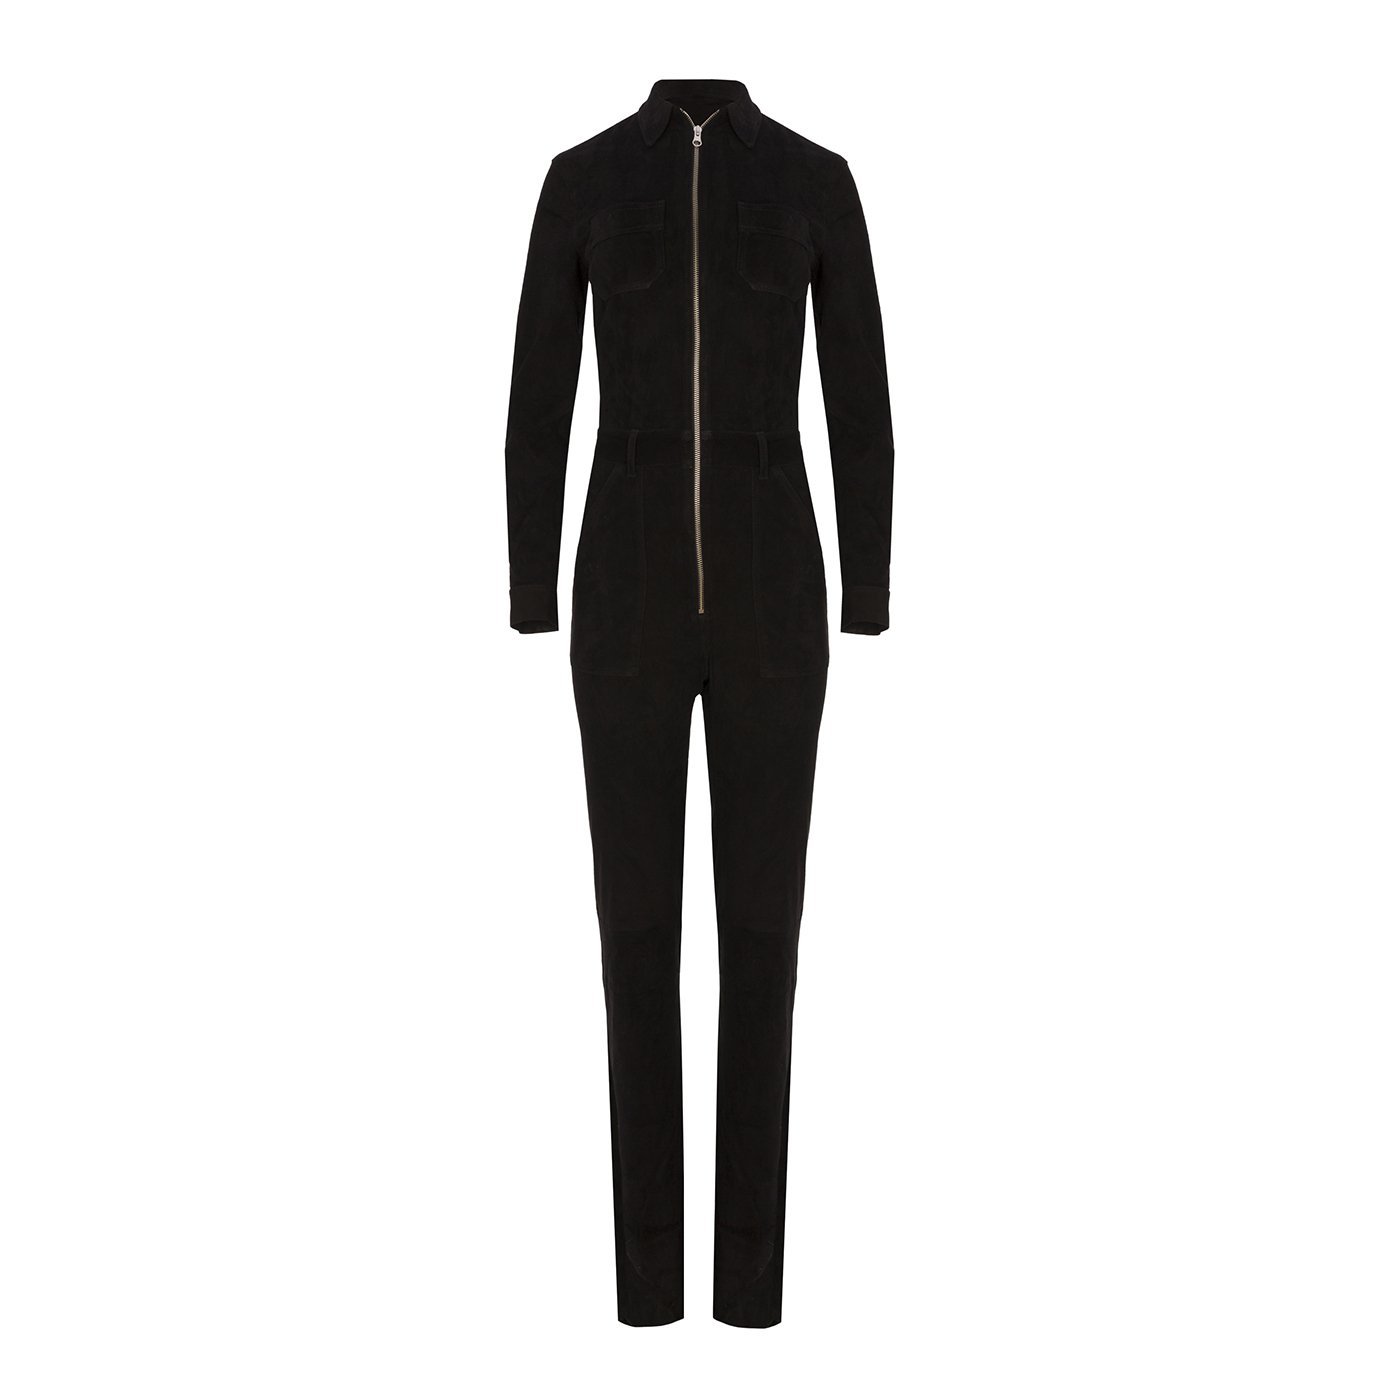 Black suede jumpsuit by Mon&Pau